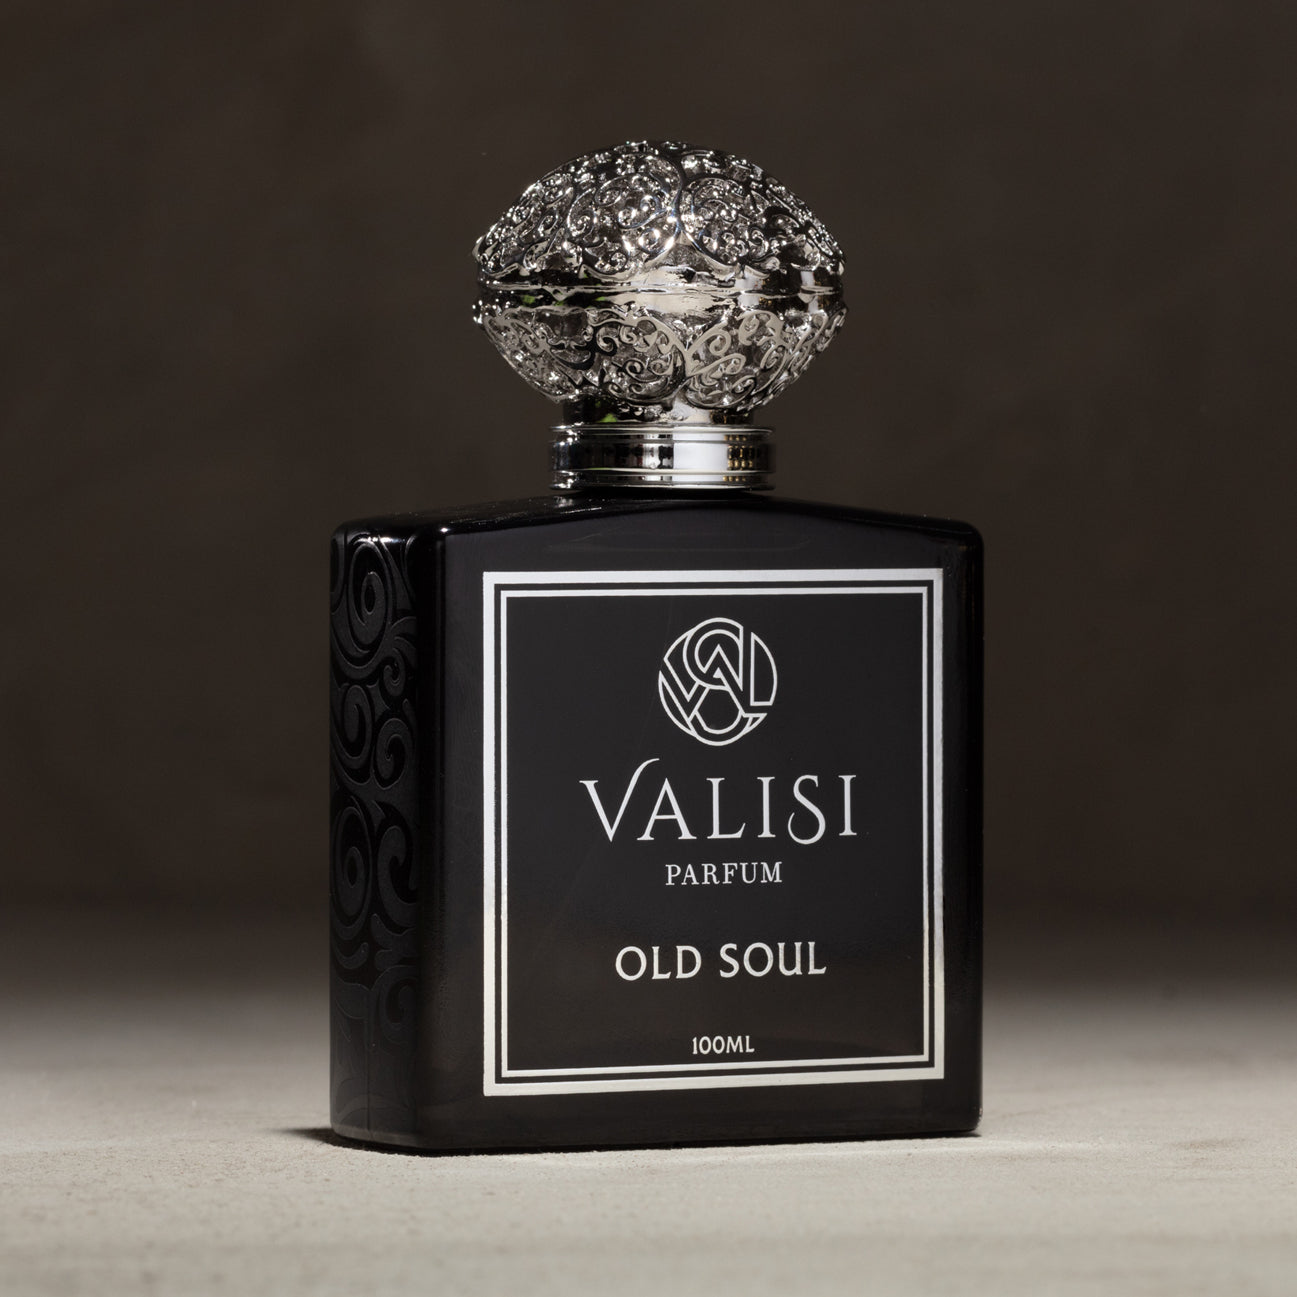 Old Soul Parfum